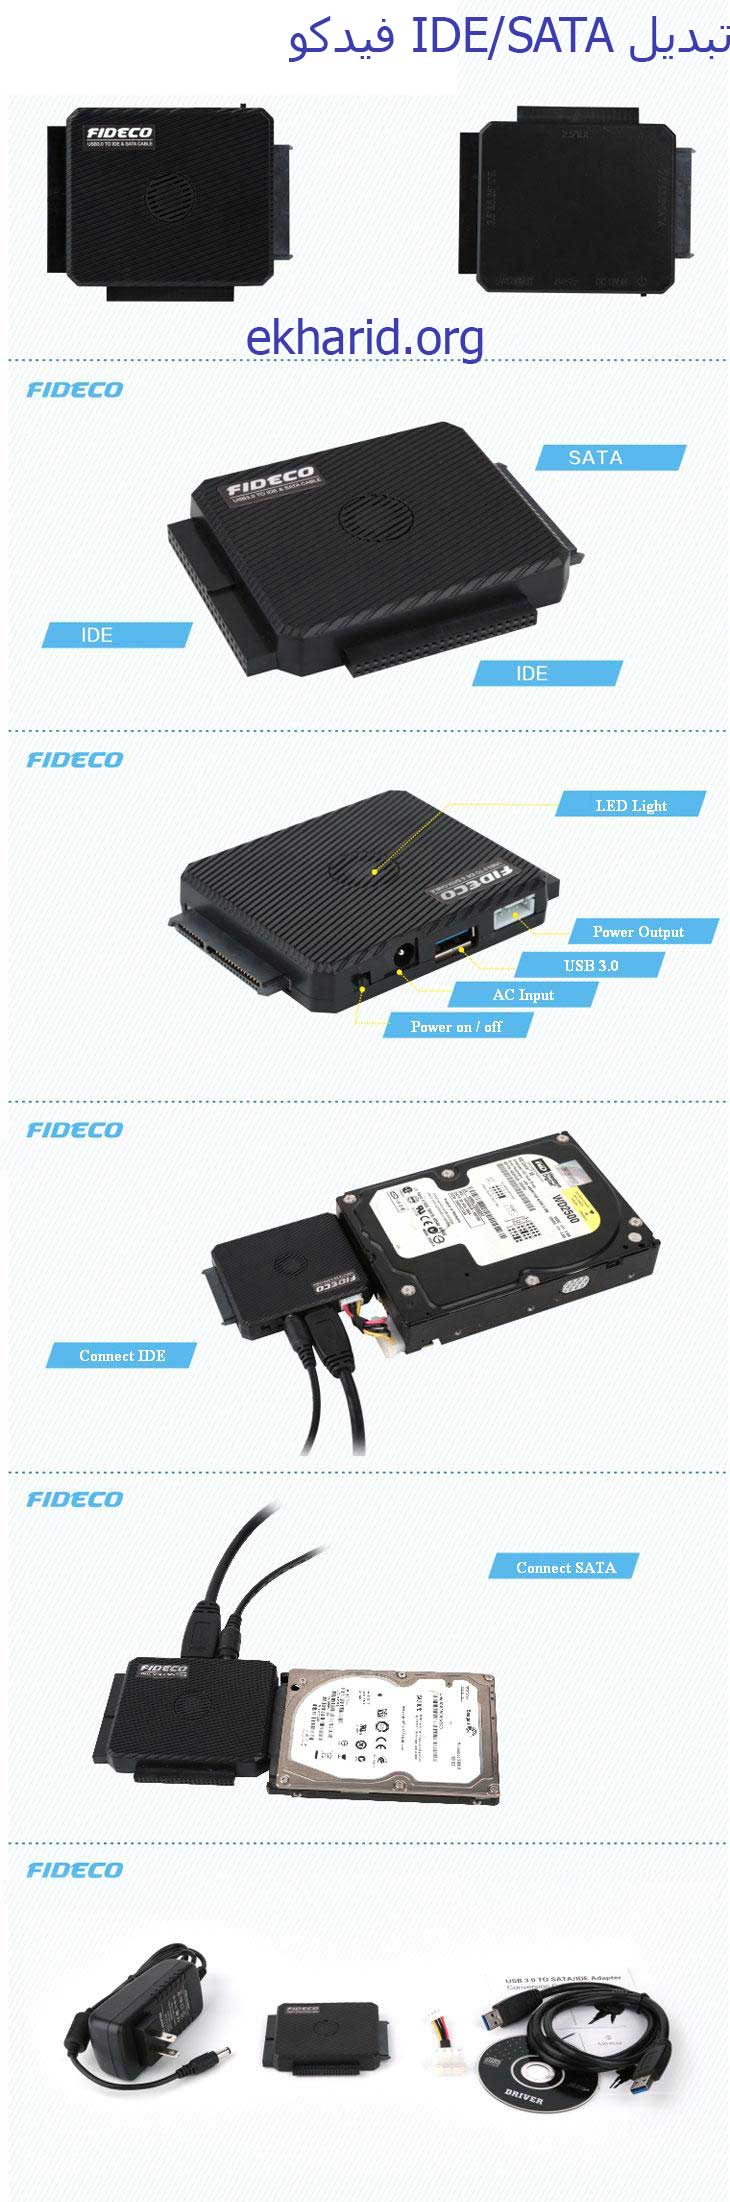 تبدیل آی دی ای و ساتا فیدکو USB 3.0 to IDE/SATA Converter FIDECO